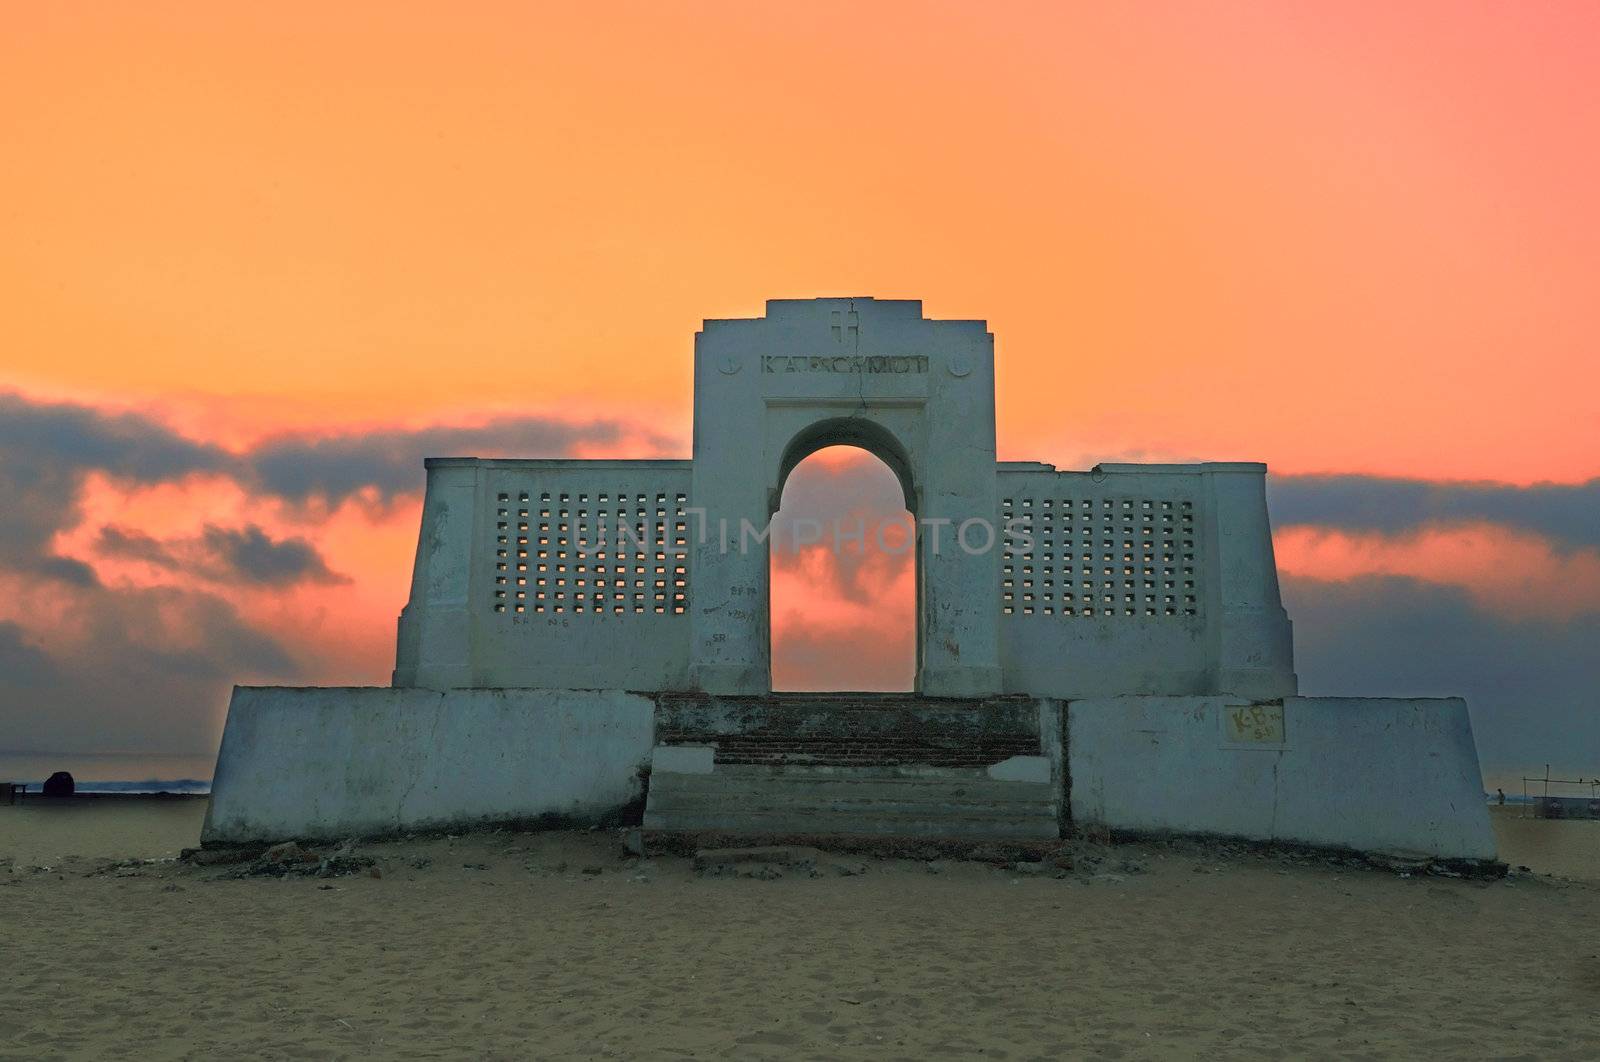 A beautiful sunrise at a beach in Chennai India